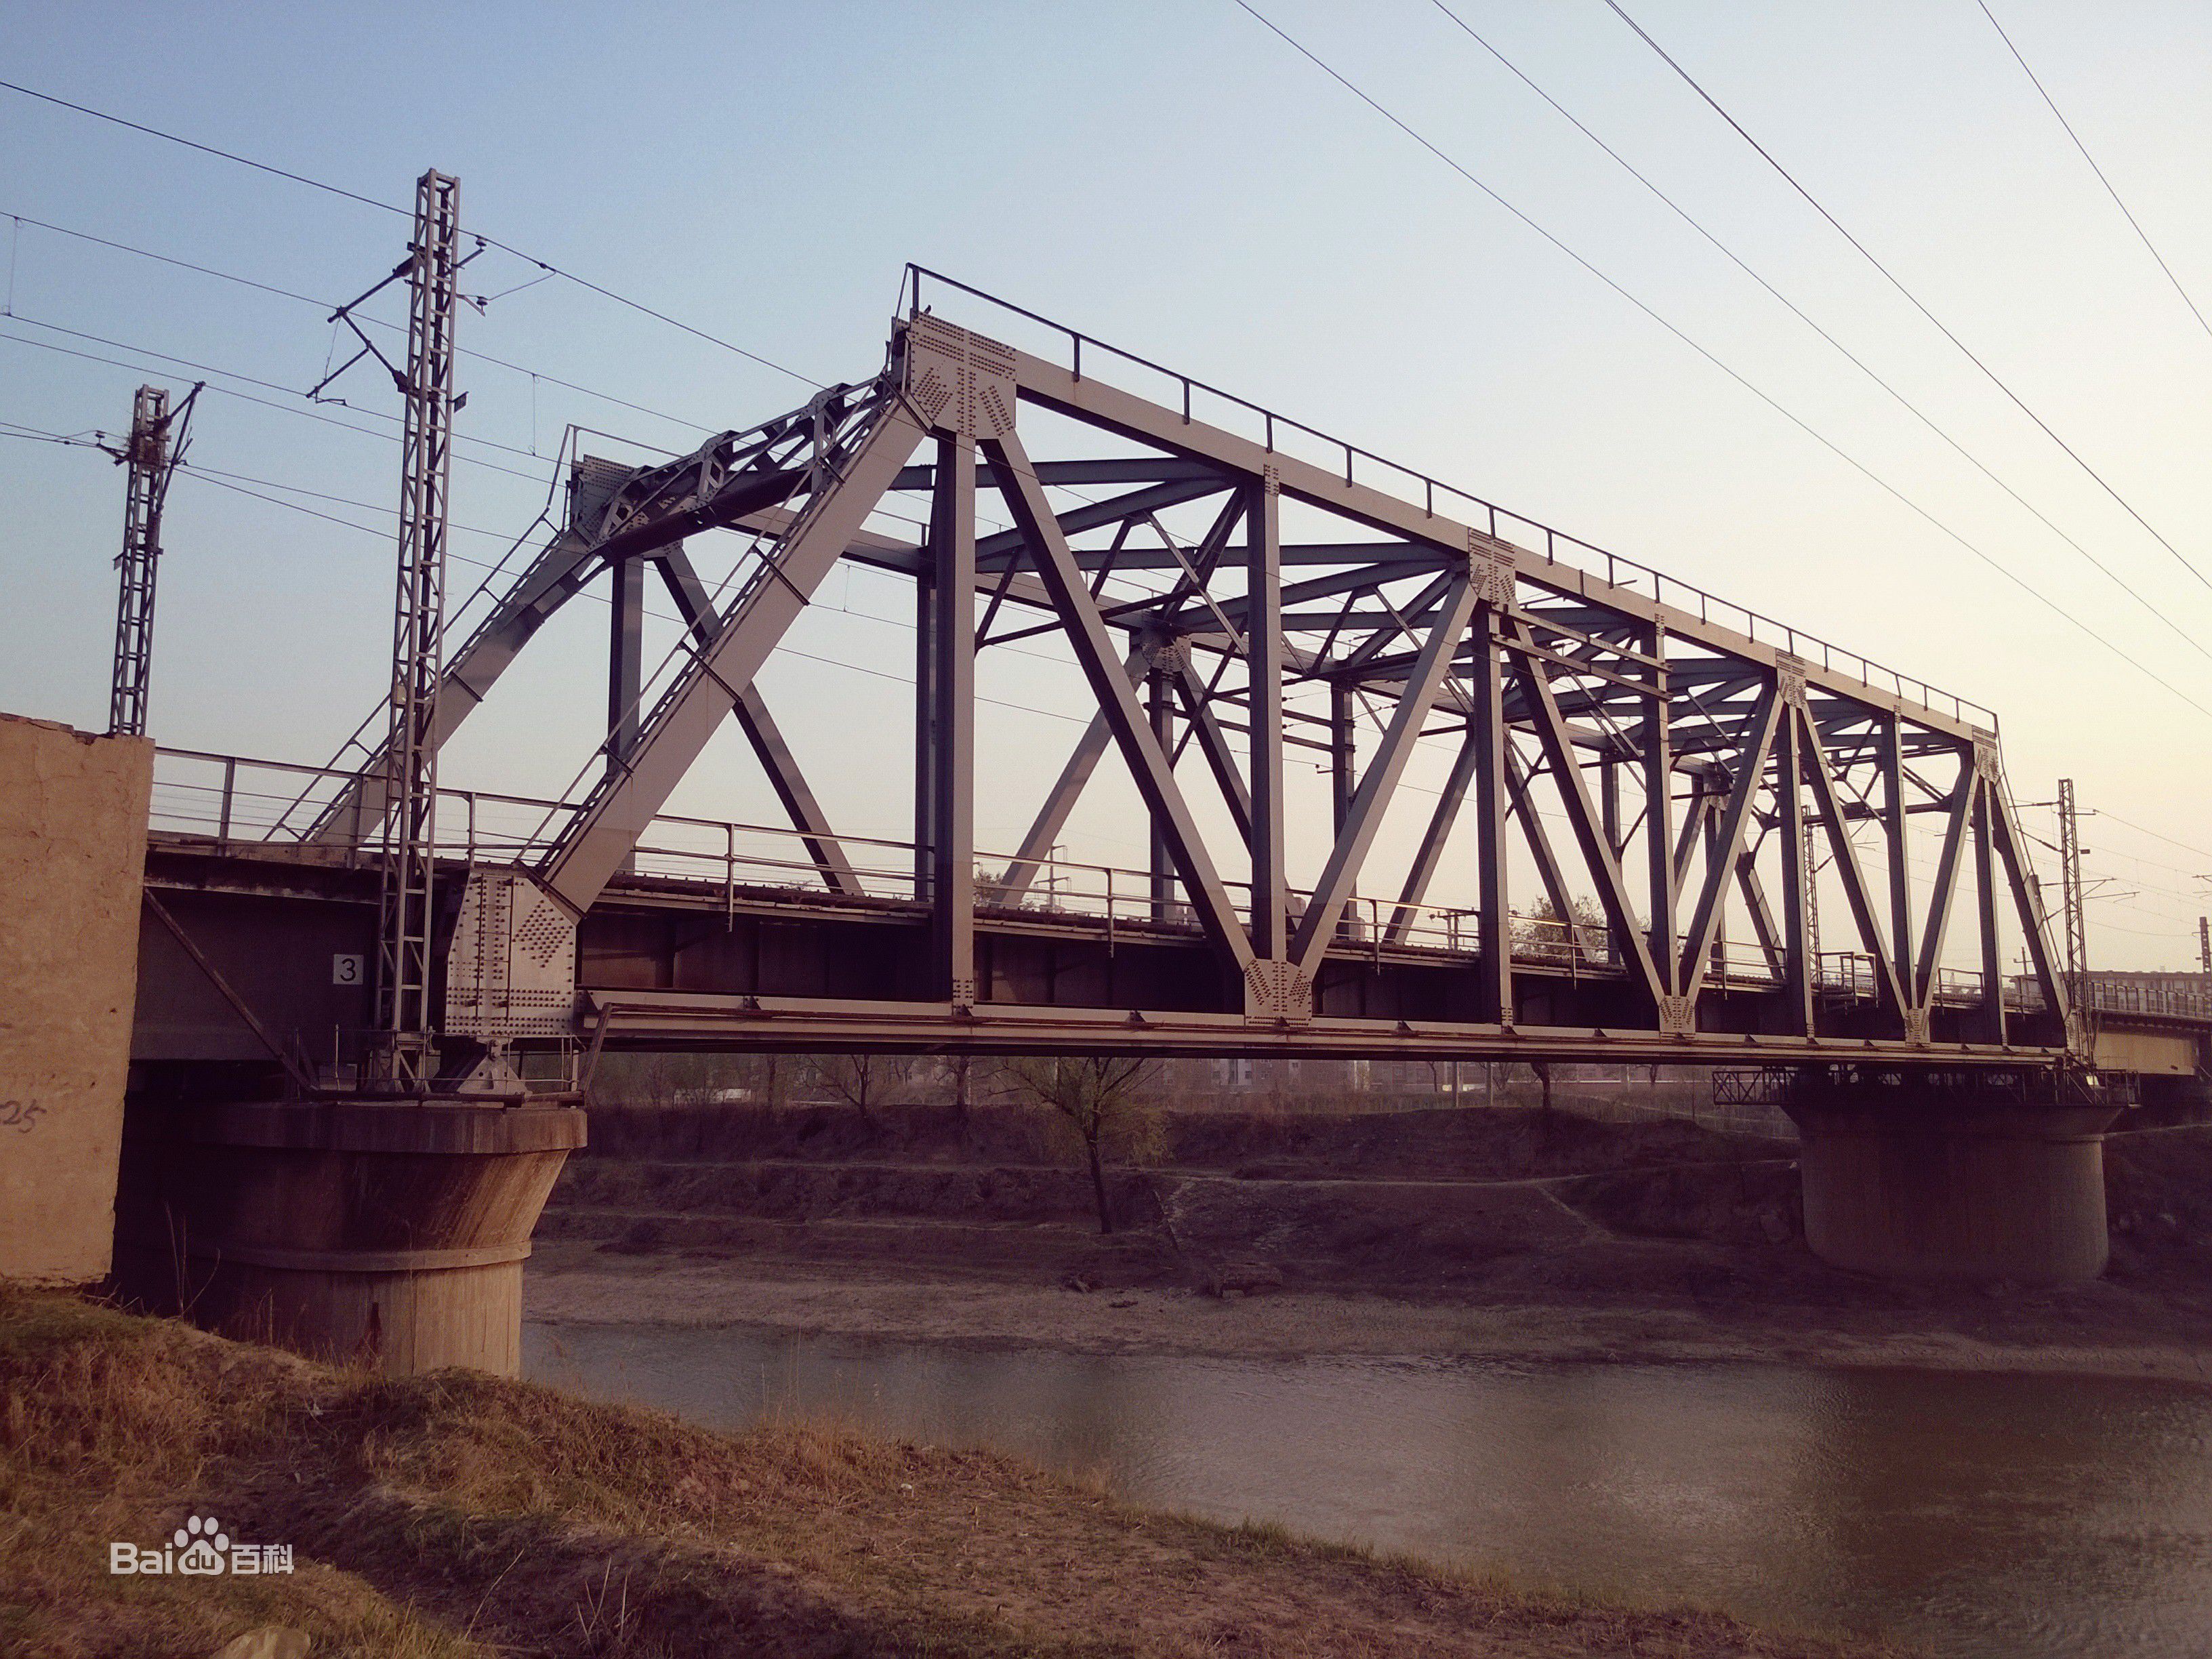 石德鐵路德州京杭運河大橋